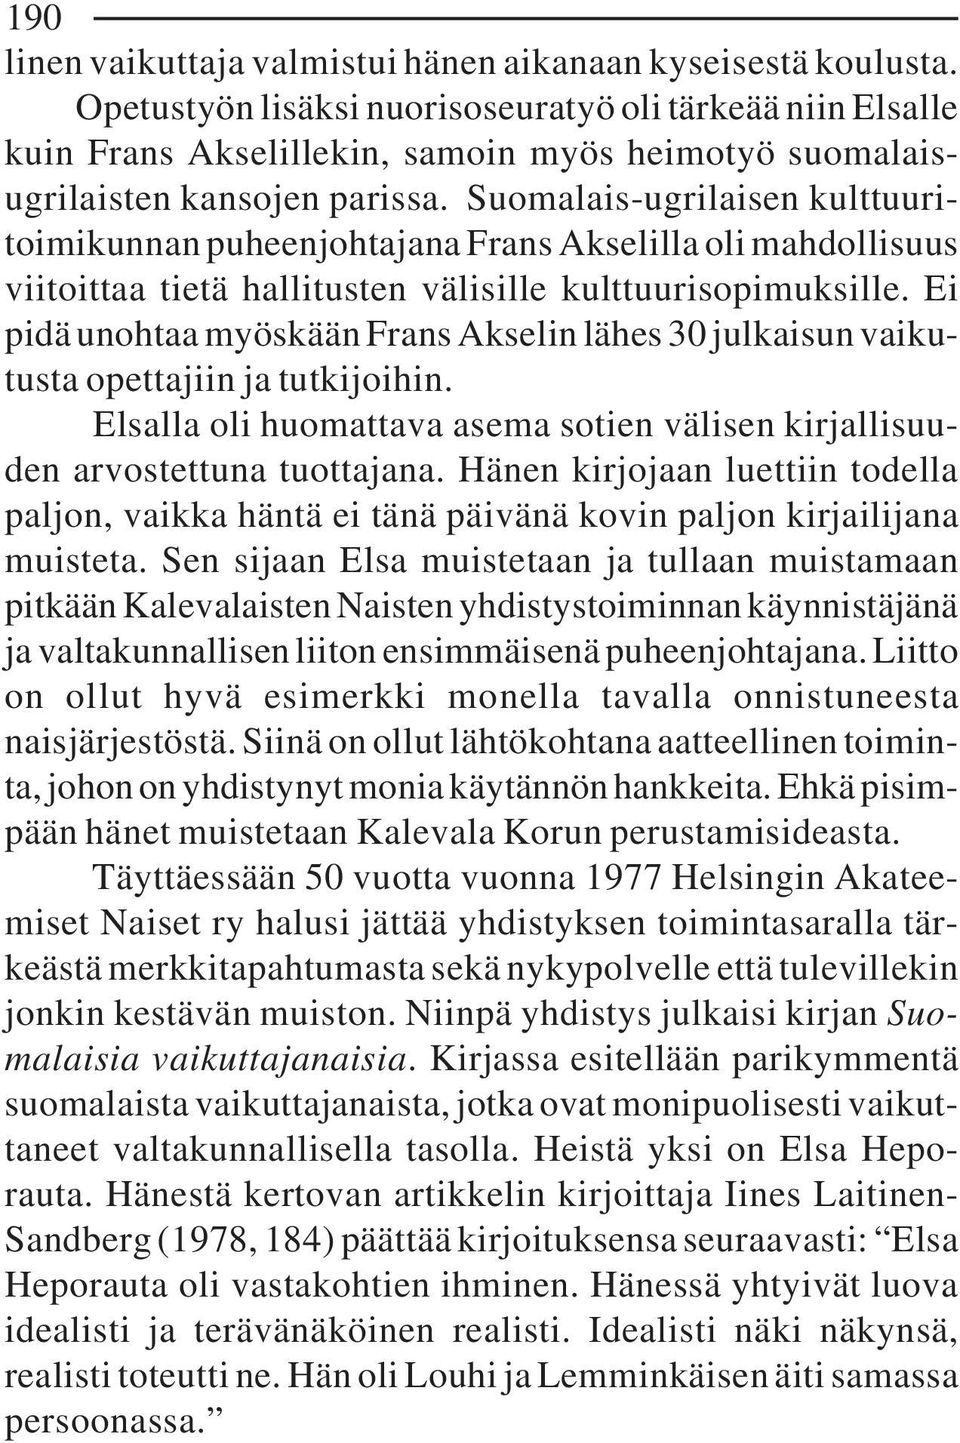 Suomalais-ugrilaisen kulttuuritoimikunnan puheenjohtajana Frans Akselilla oli mahdollisuus viitoittaa tietä hallitusten välisille kulttuurisopimuksille.